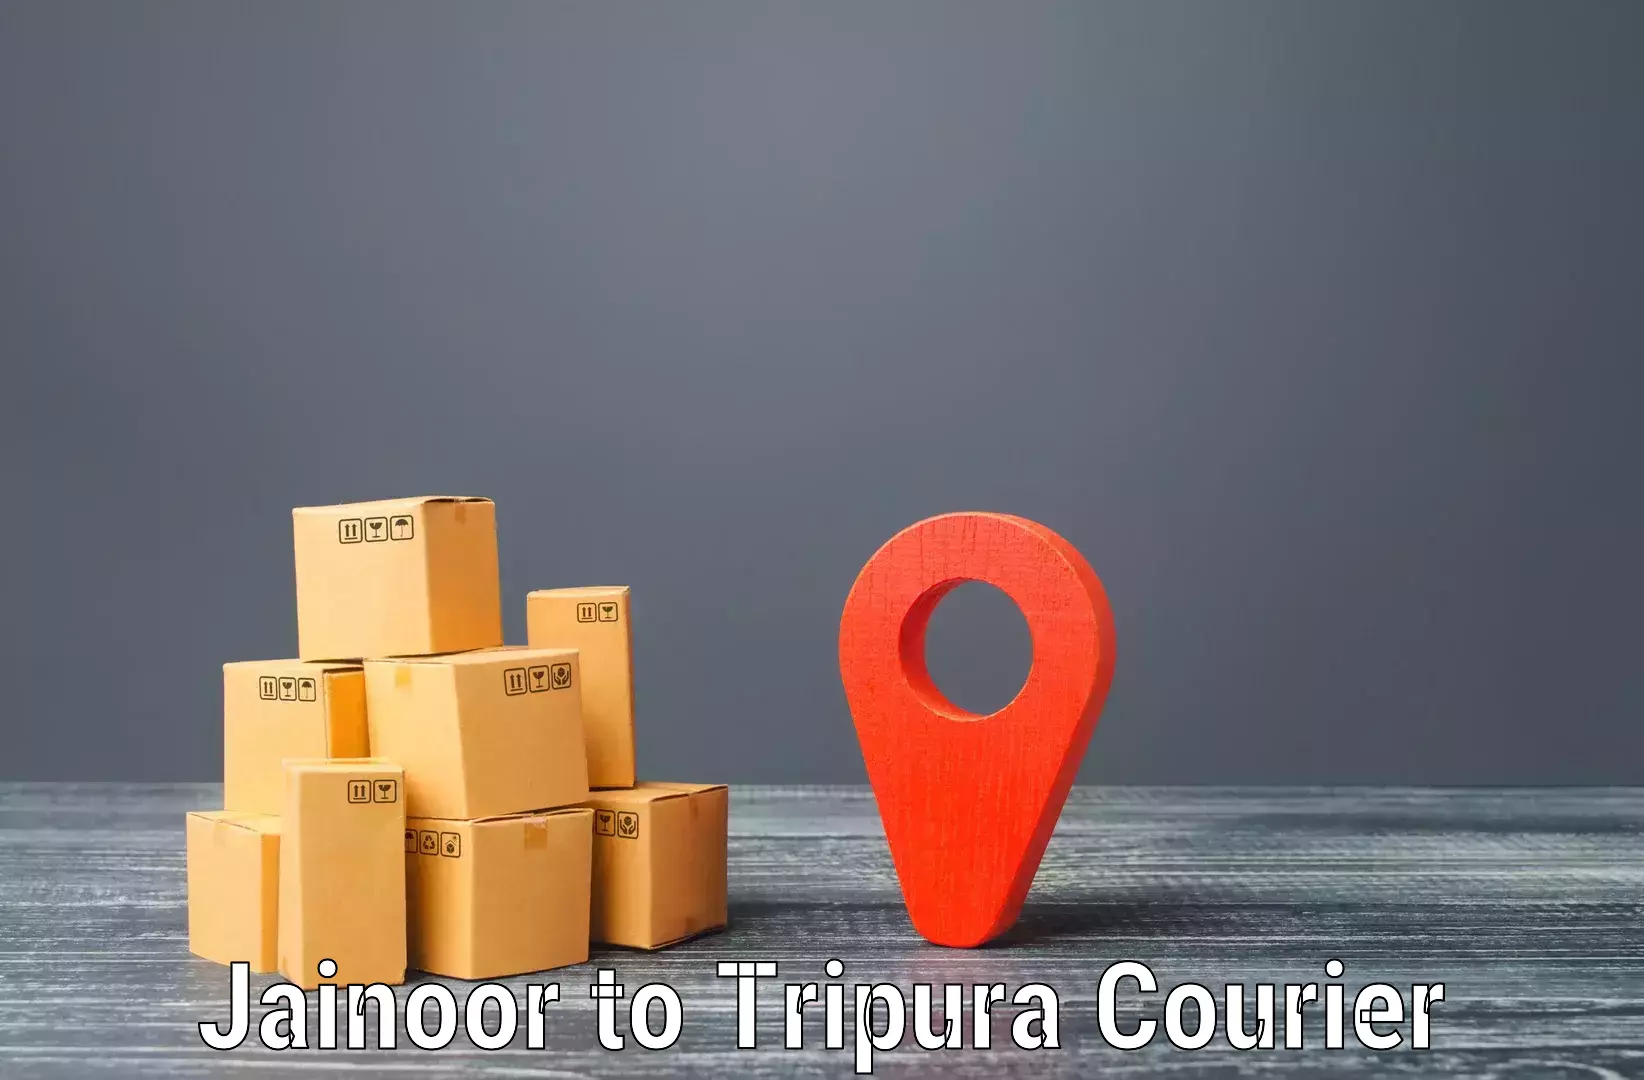 Efficient courier operations Jainoor to North Tripura